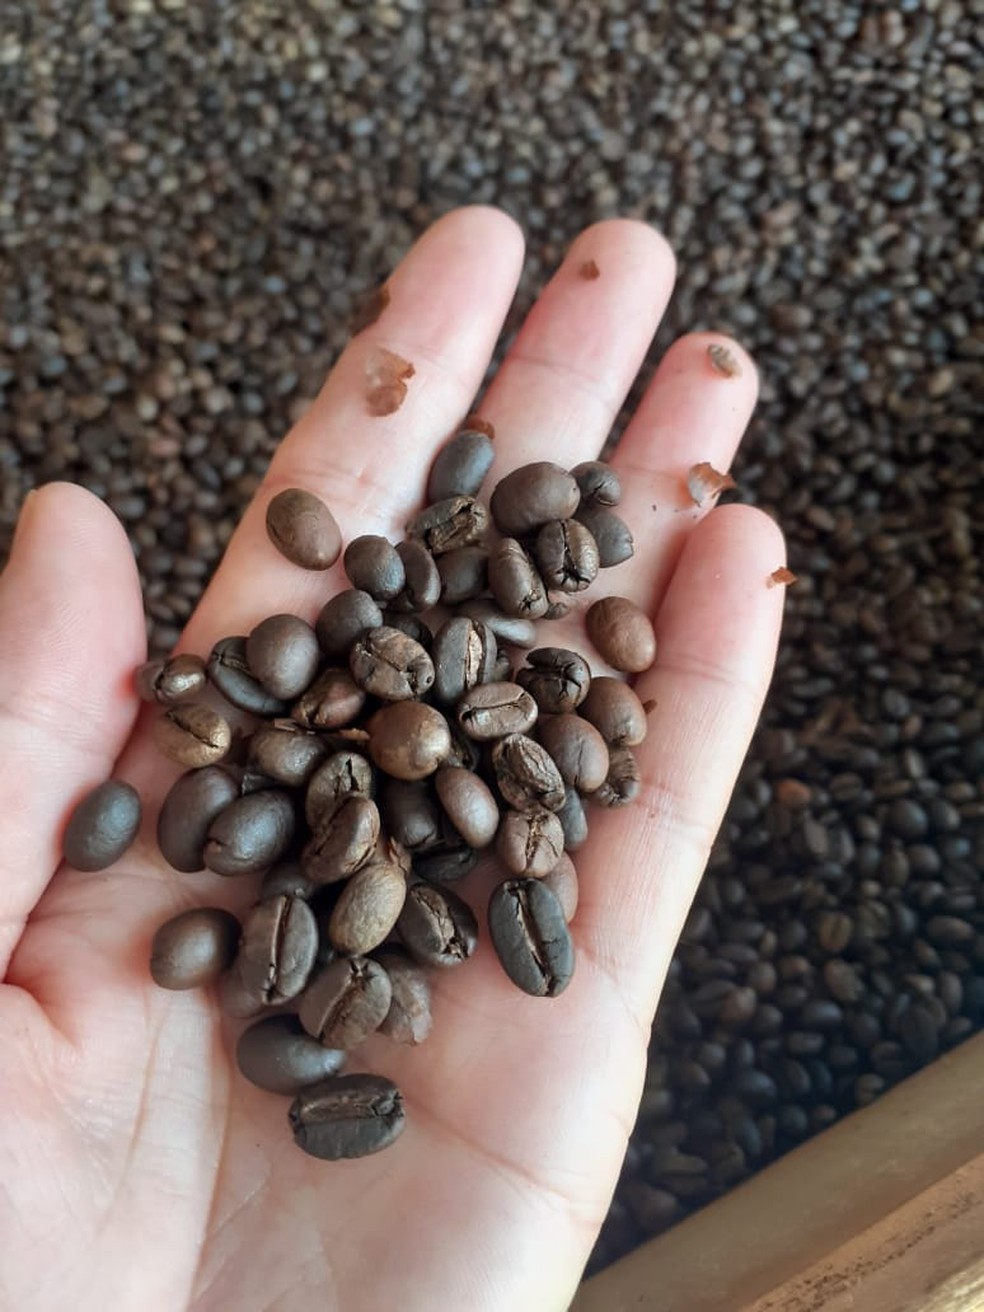 Café é torrado e moído de forma 100% natural, conta agrônomo  — Foto: Arquivo pessoal 